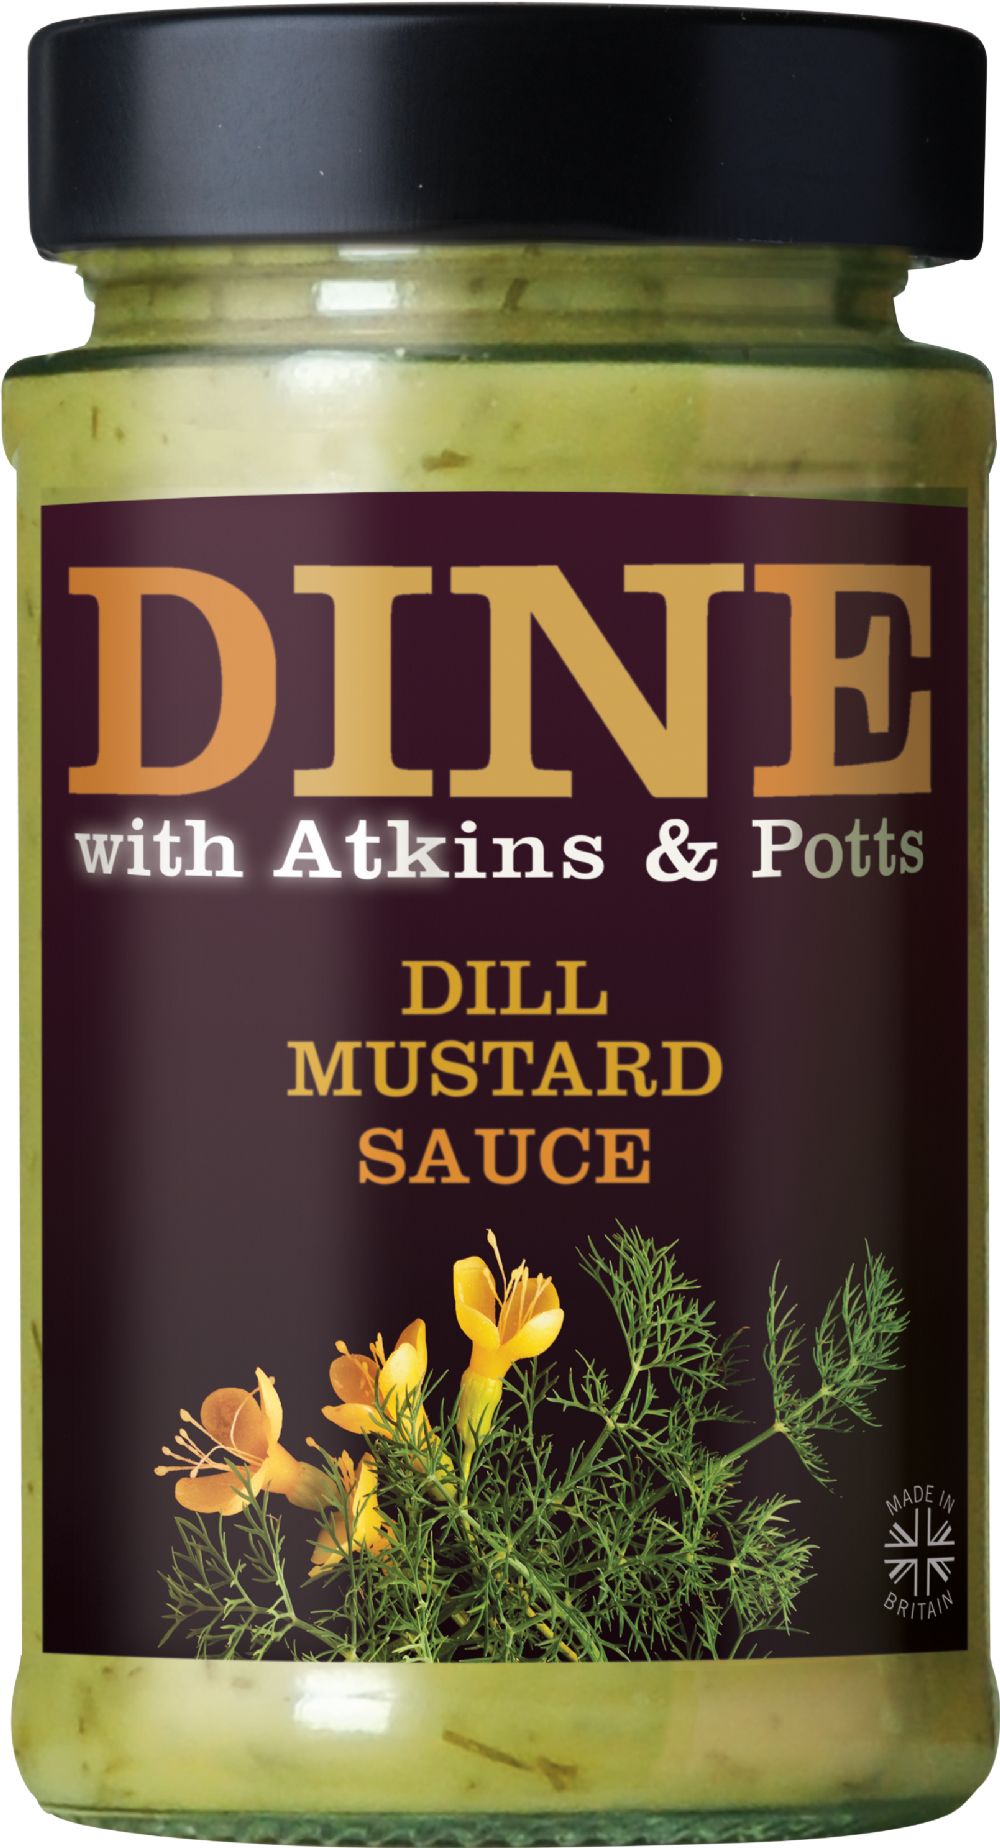 Atkins & Potts Dill Mustard Sauce